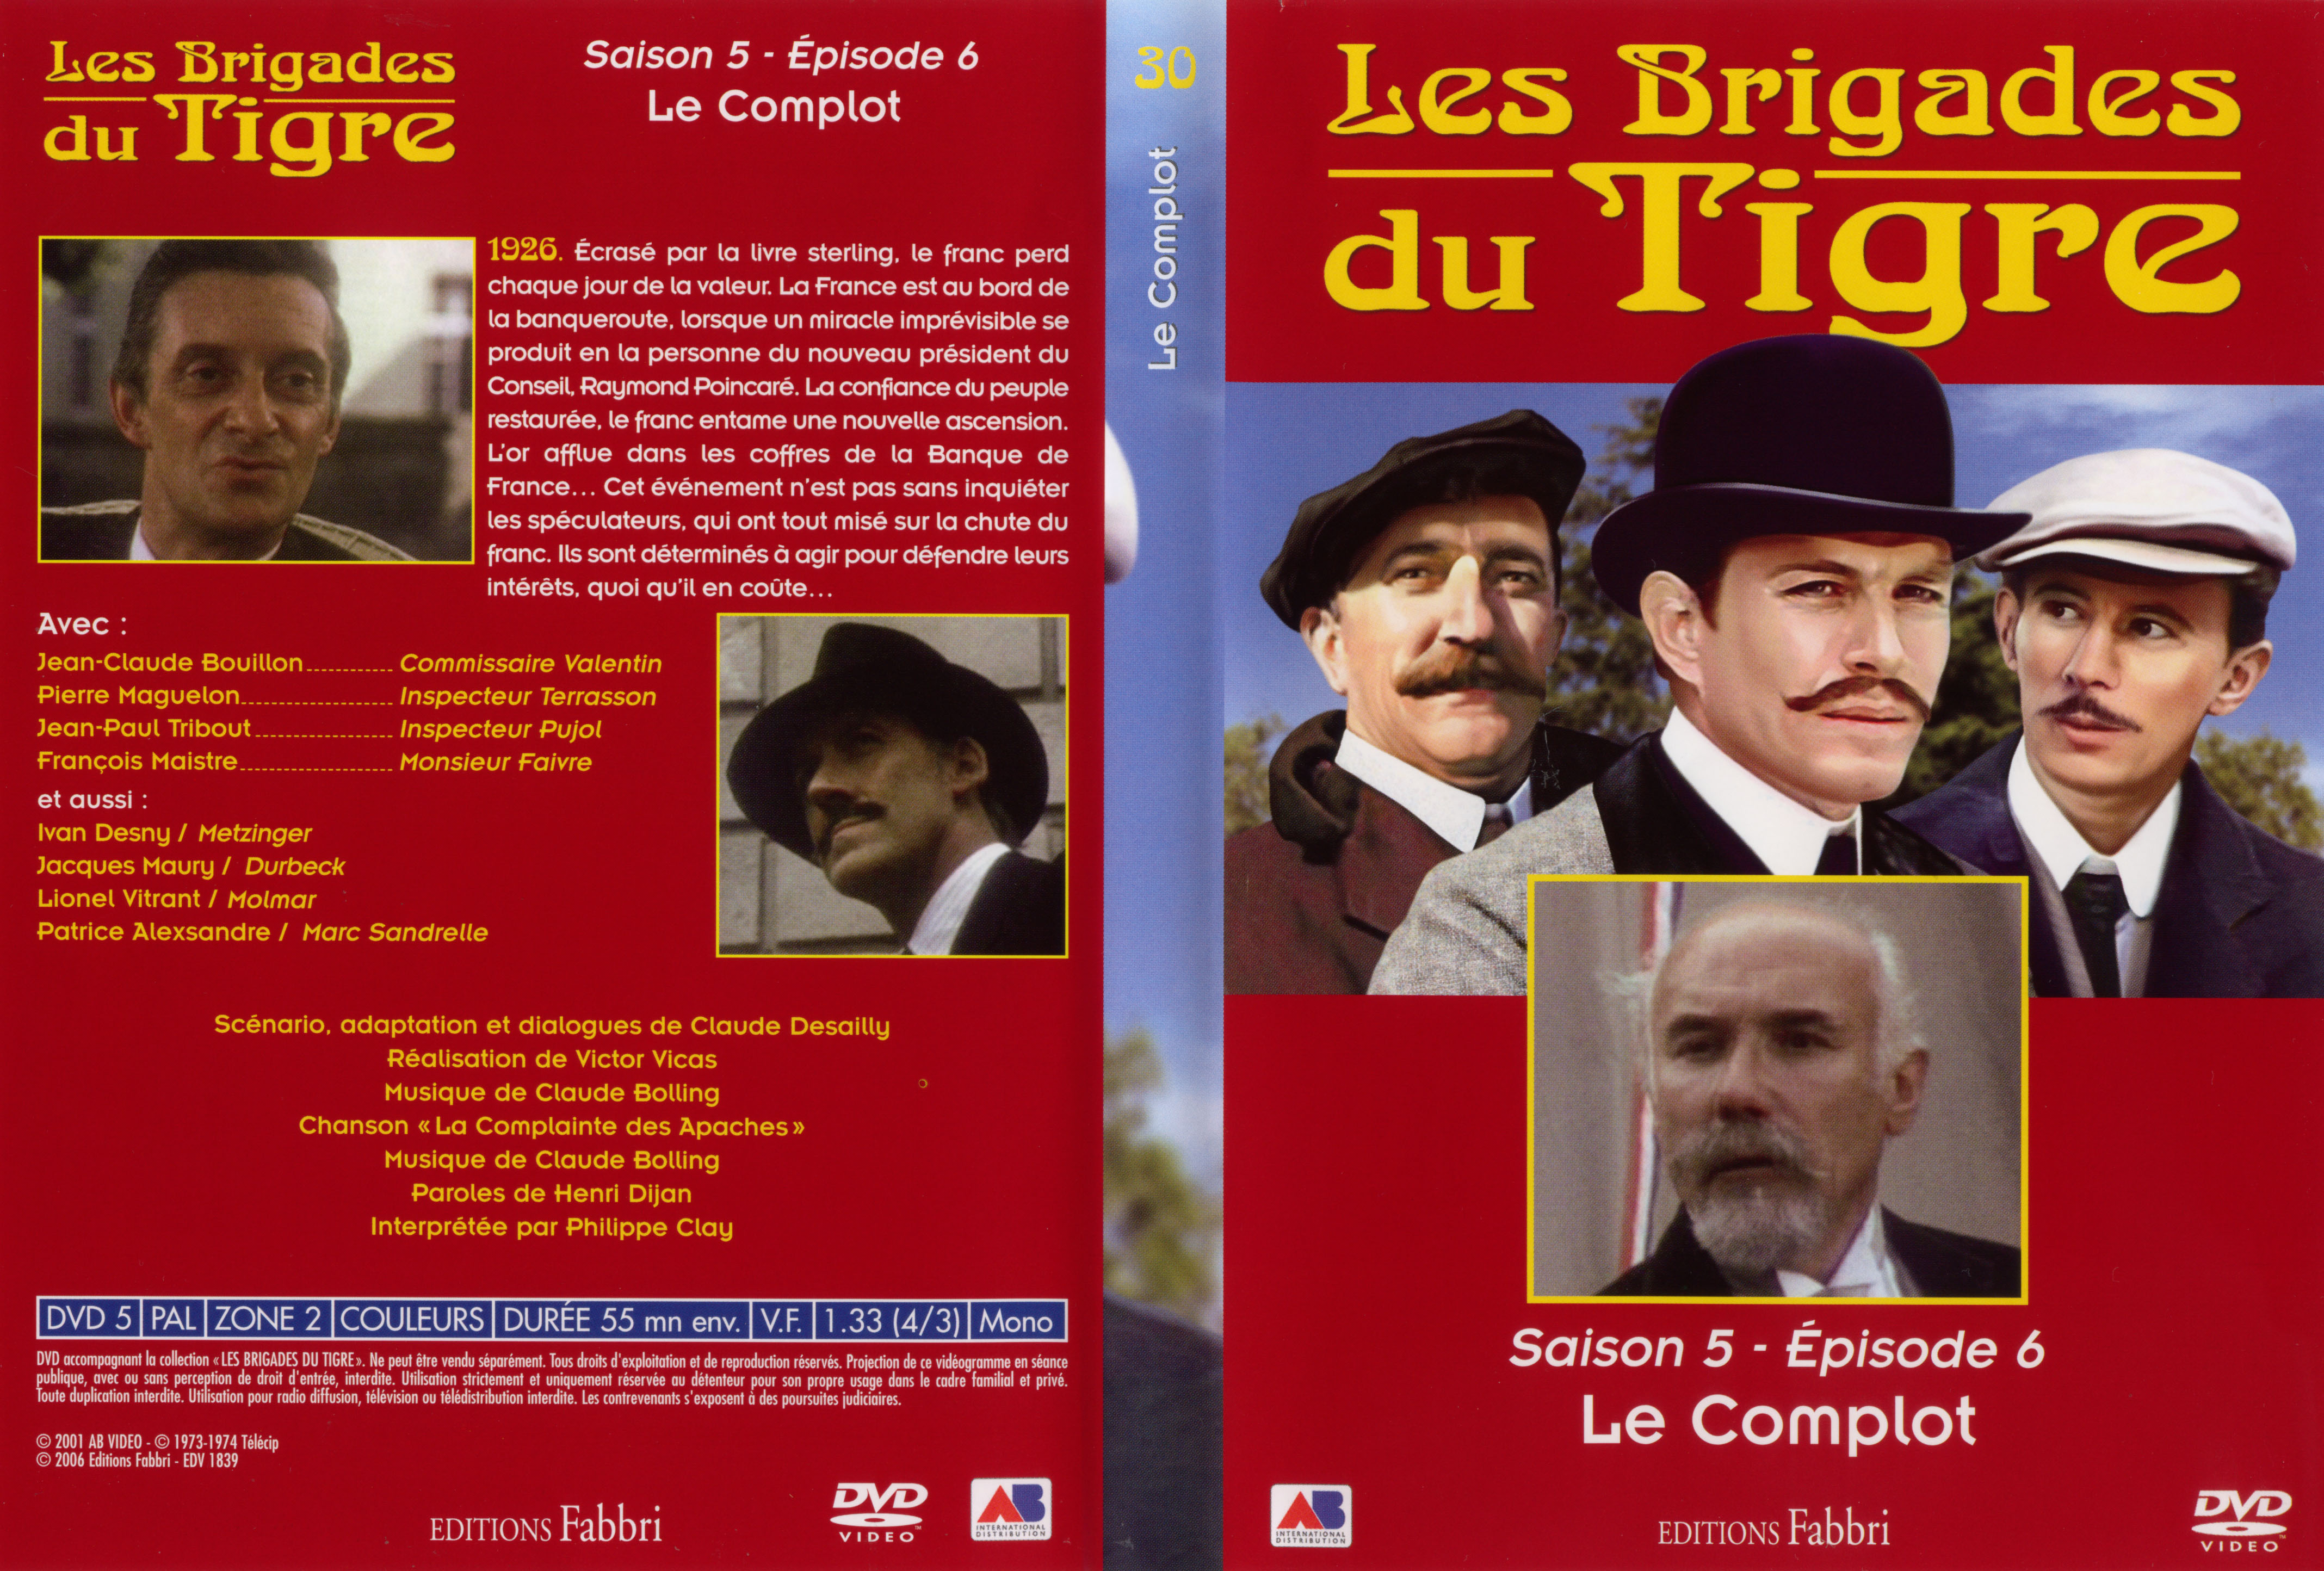 Jaquette DVD Les brigades du tigre saison 5 pisode 6